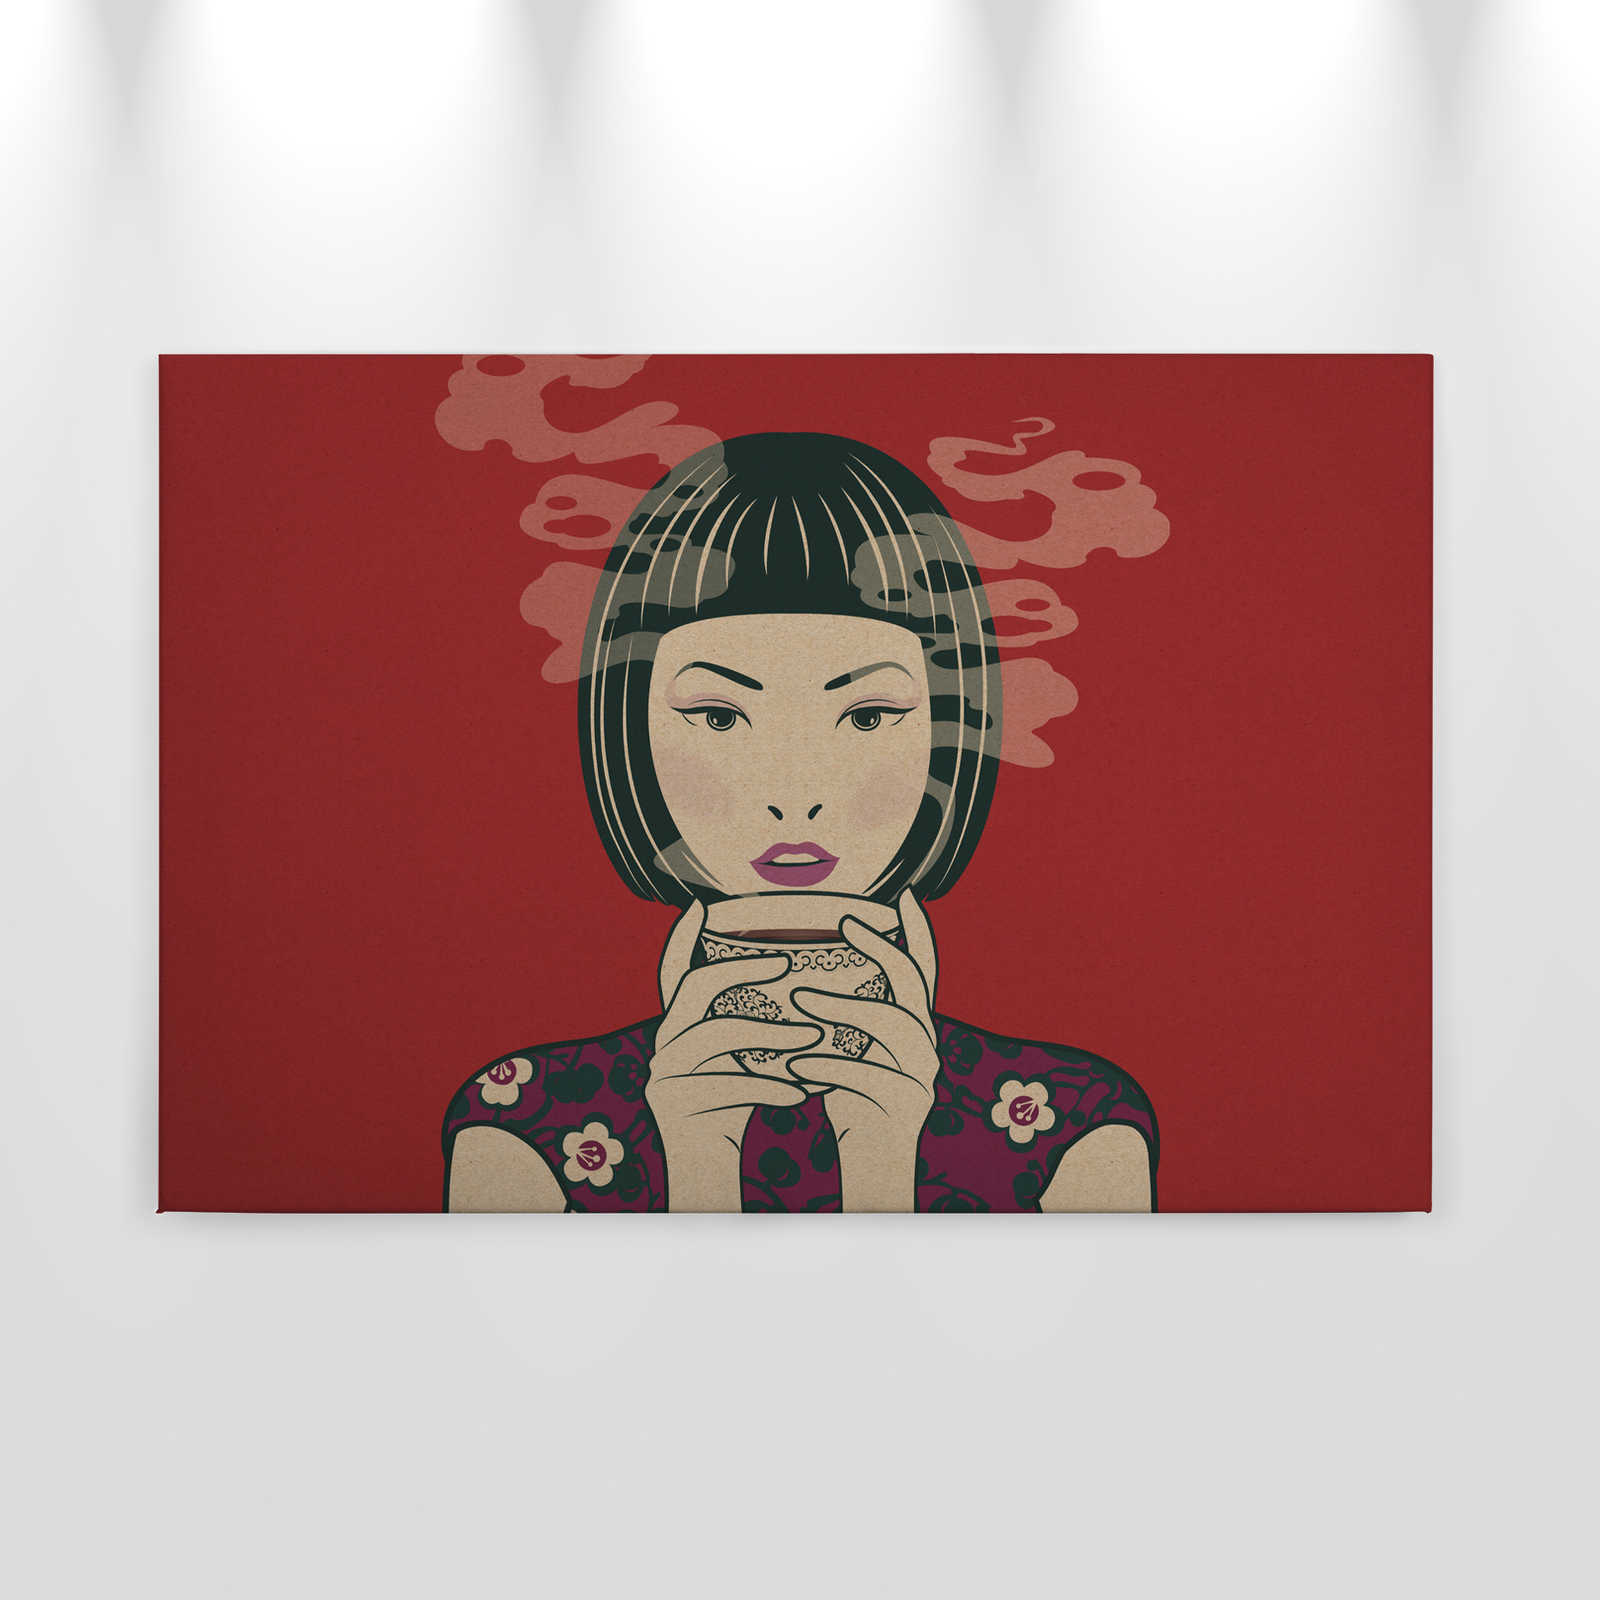             Akari 1 - Temps pour le thé, style manga sur toile - À structure en carton - 0,90 m x 0,60 m
        